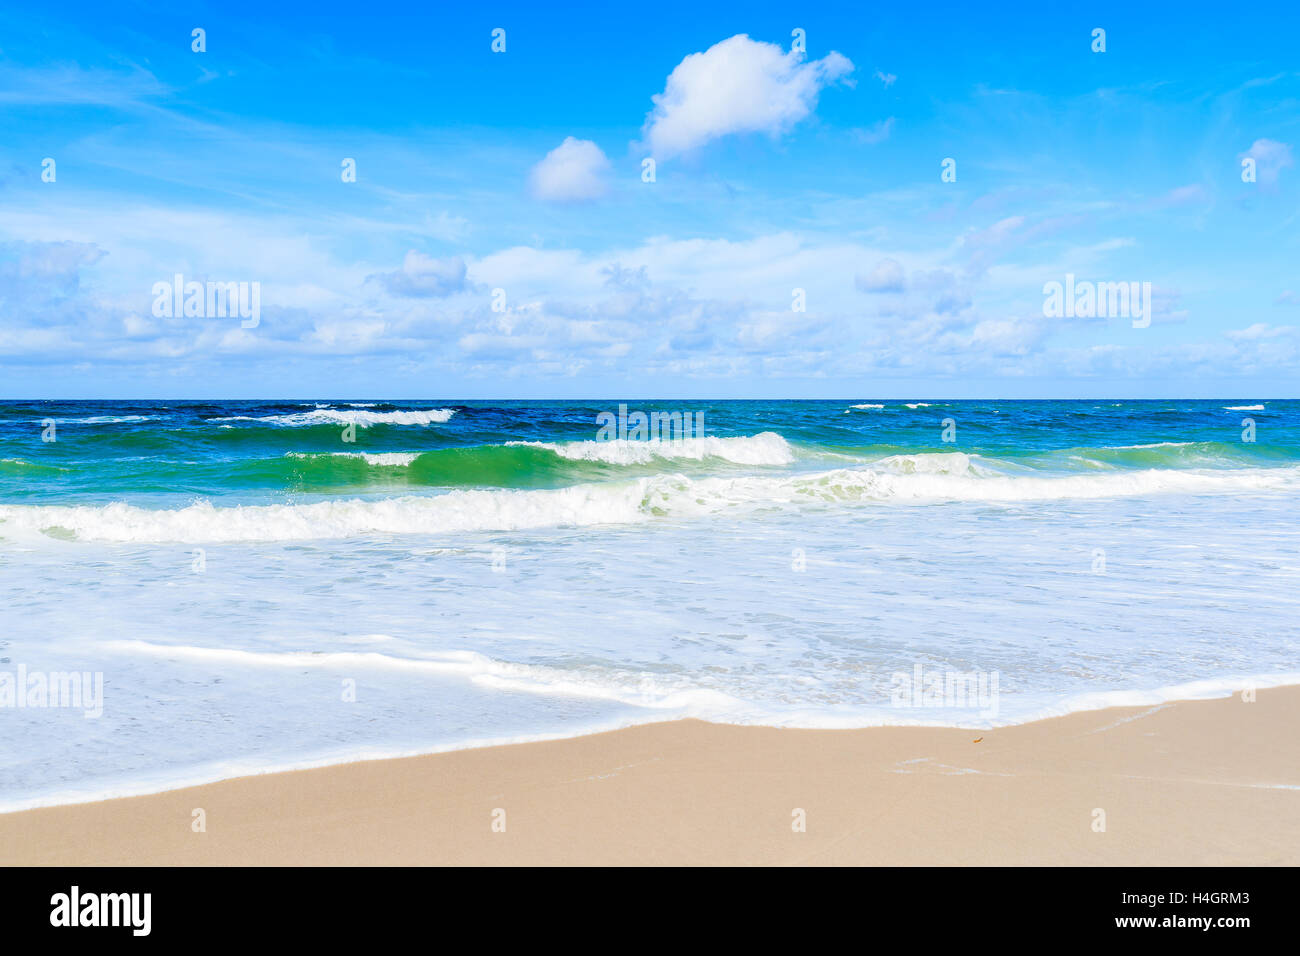 Sandy beach on Sylt Island, Germany Stock Photo